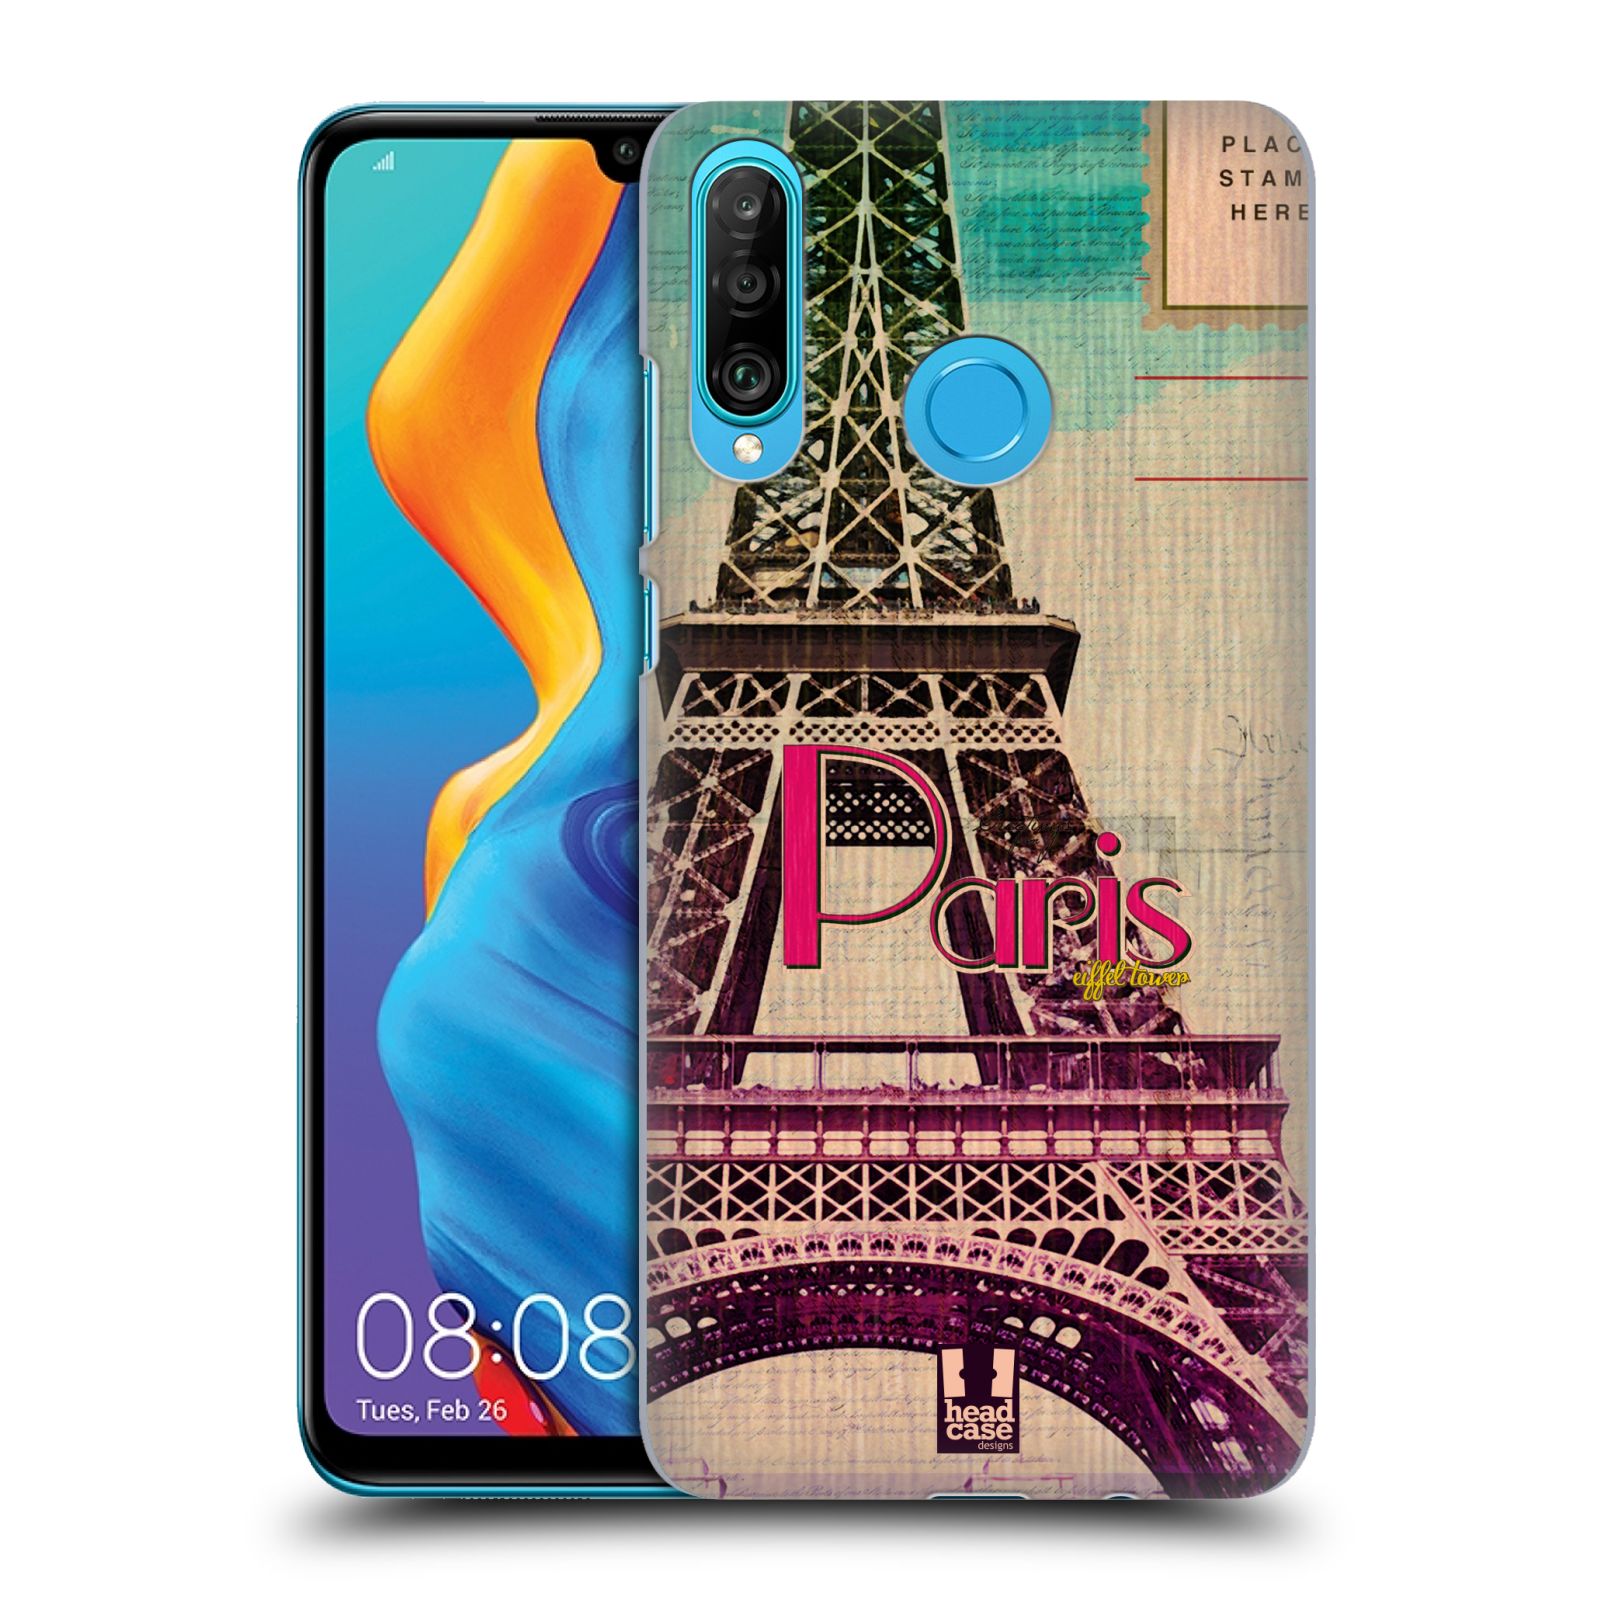 Plastové pouzdro na mobil Huawei P30 Lite - Head Case - PARIS VINTAGE (Plastový kryt, pouzdro, obal na mobilní telefon Huawei P30 Lite Dual Sim (MAR-L01A, MAR-L21A, MAR-LX1A) s motivem PARIS VINTAGE)